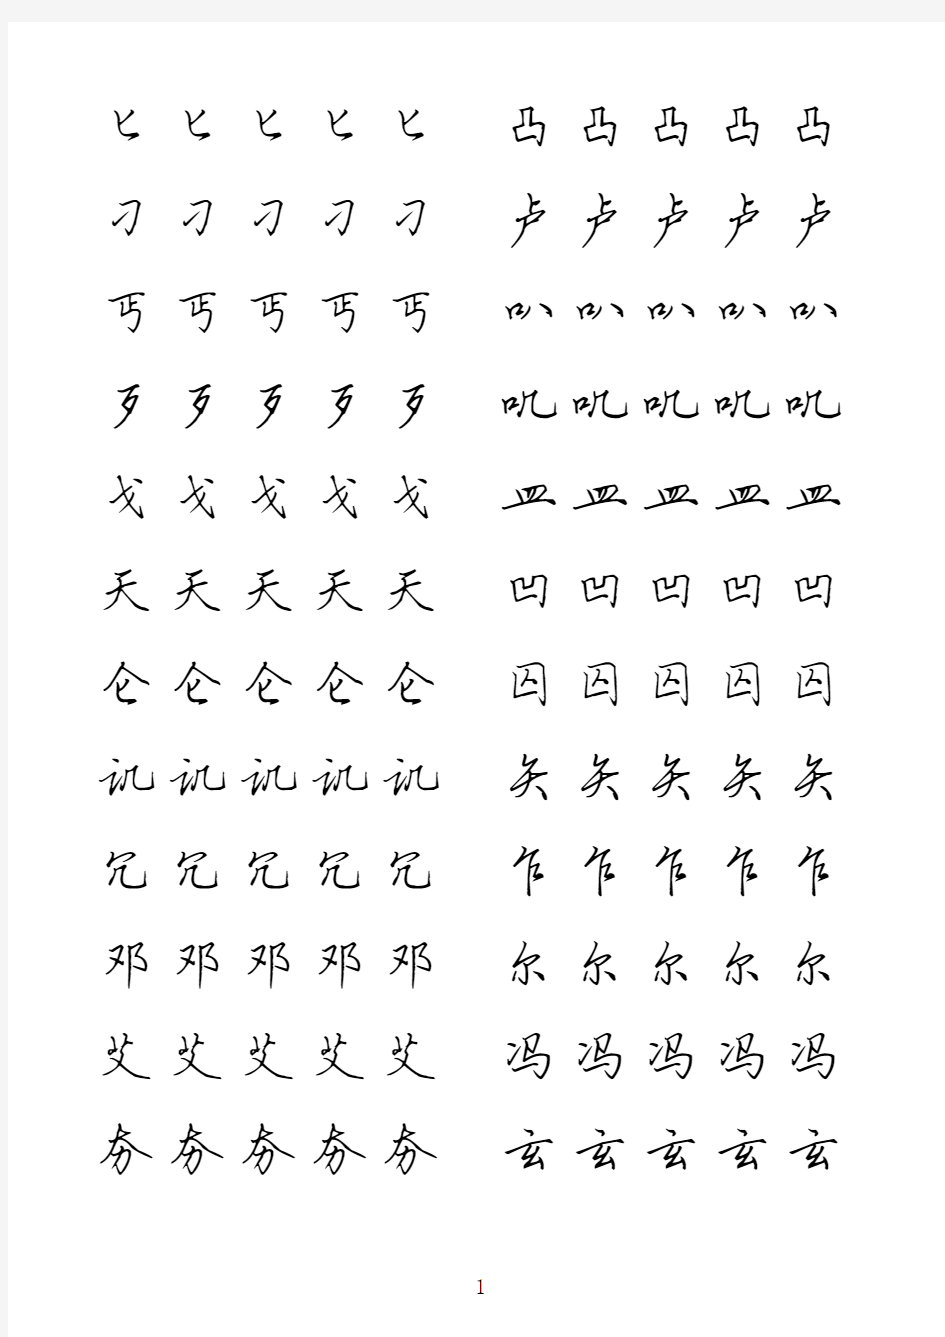 田英章硬笔行书临摹字贴-1000次常用汉字(笔画排序,每字五遍)